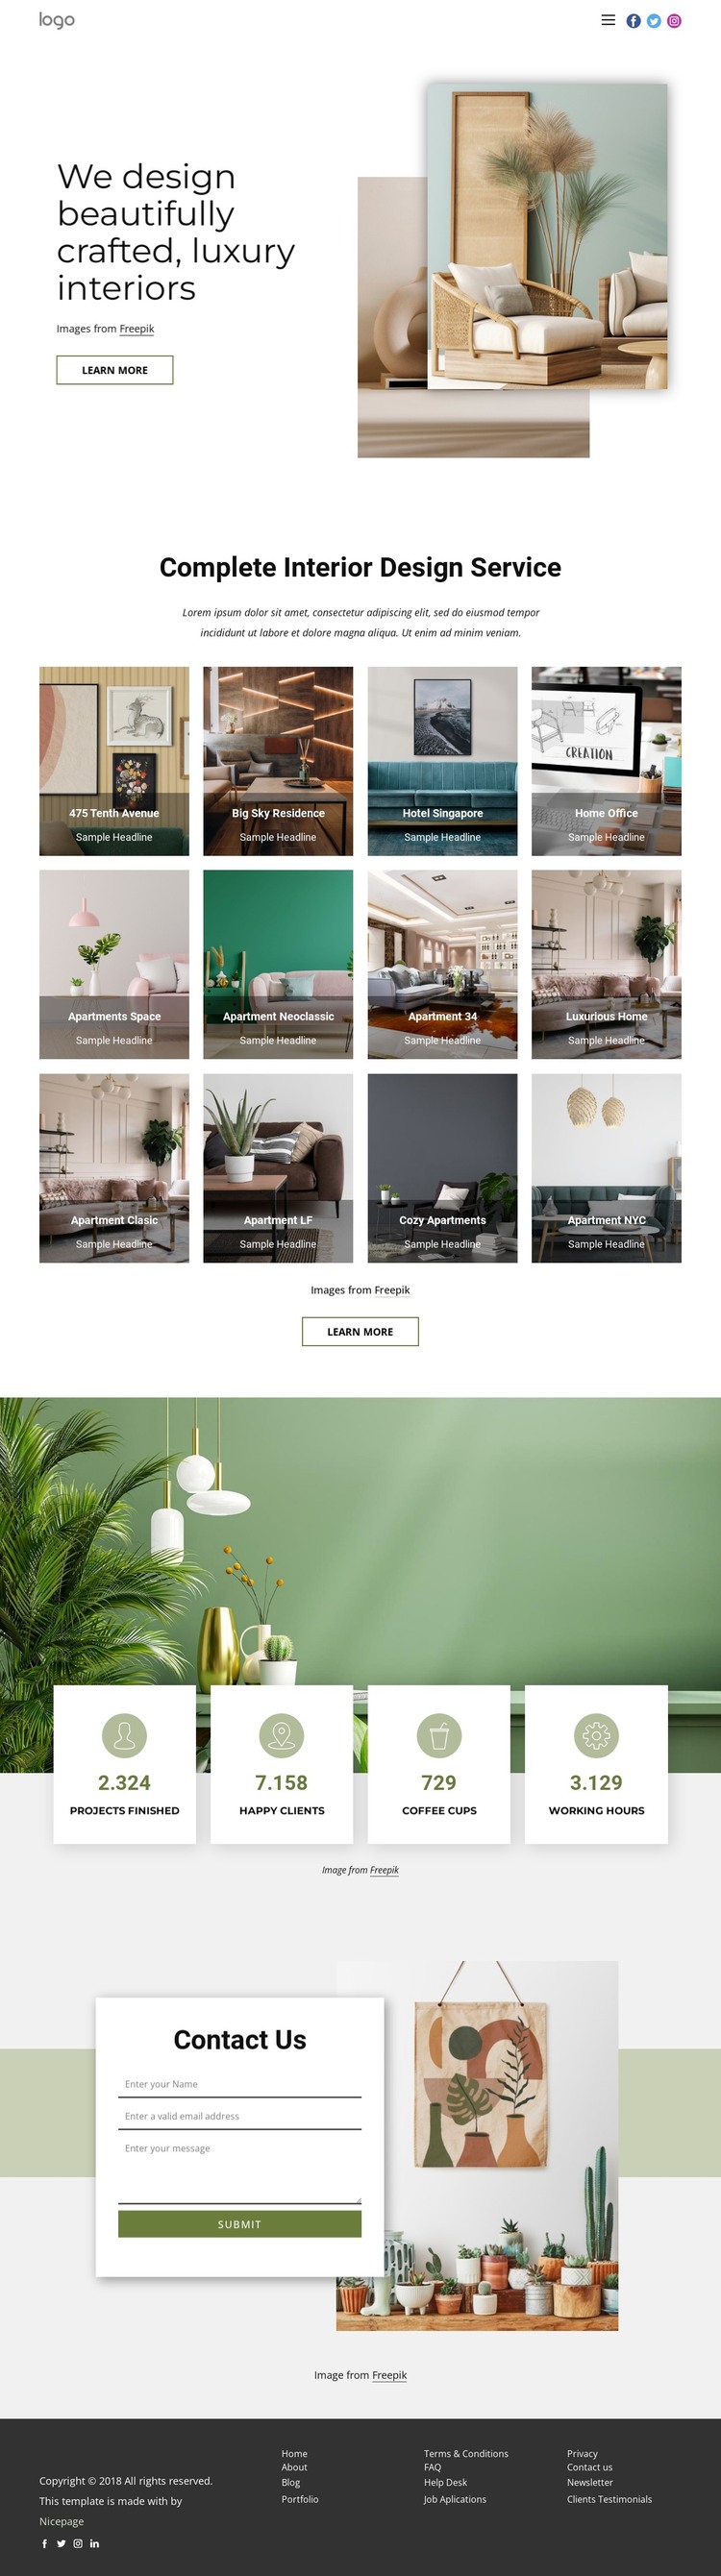 We design luxury interiors Web Design